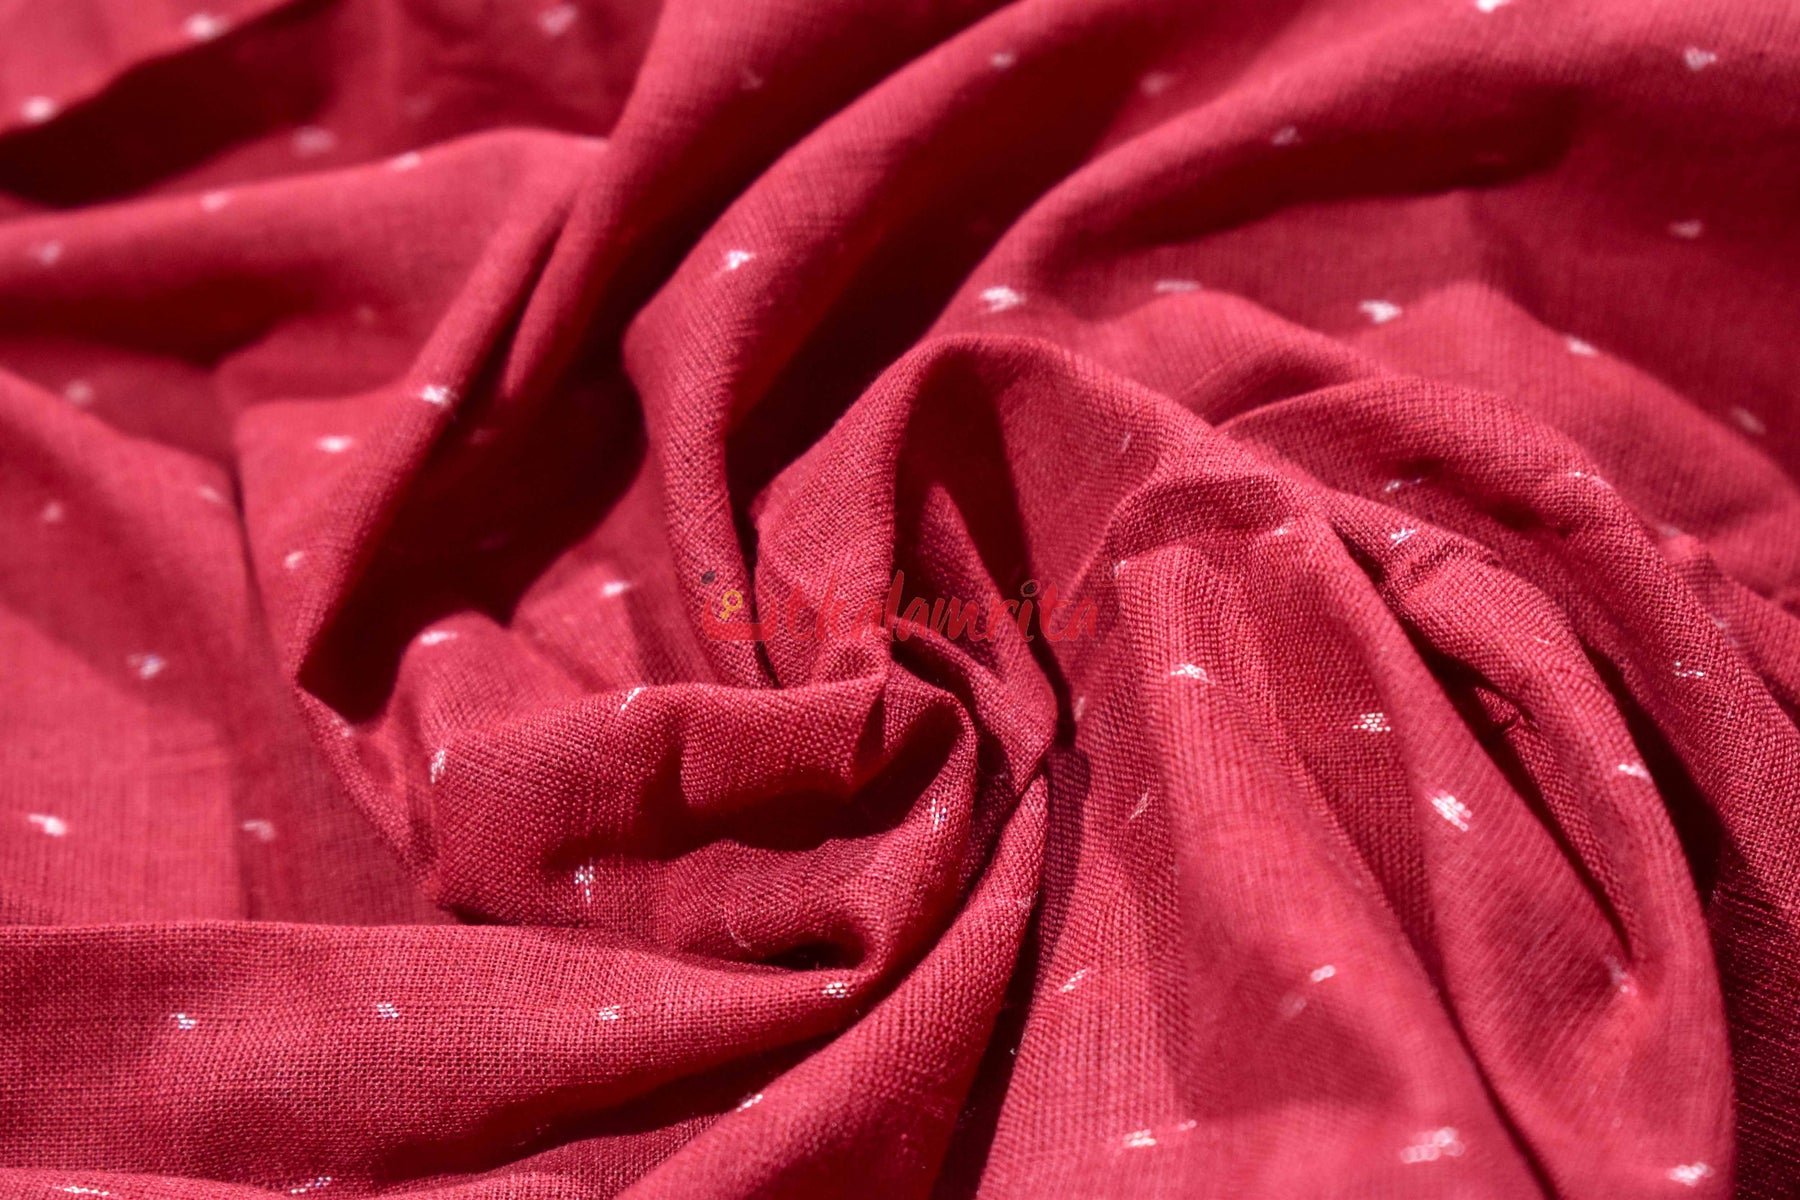 Maroon Ghagara (Fabric)